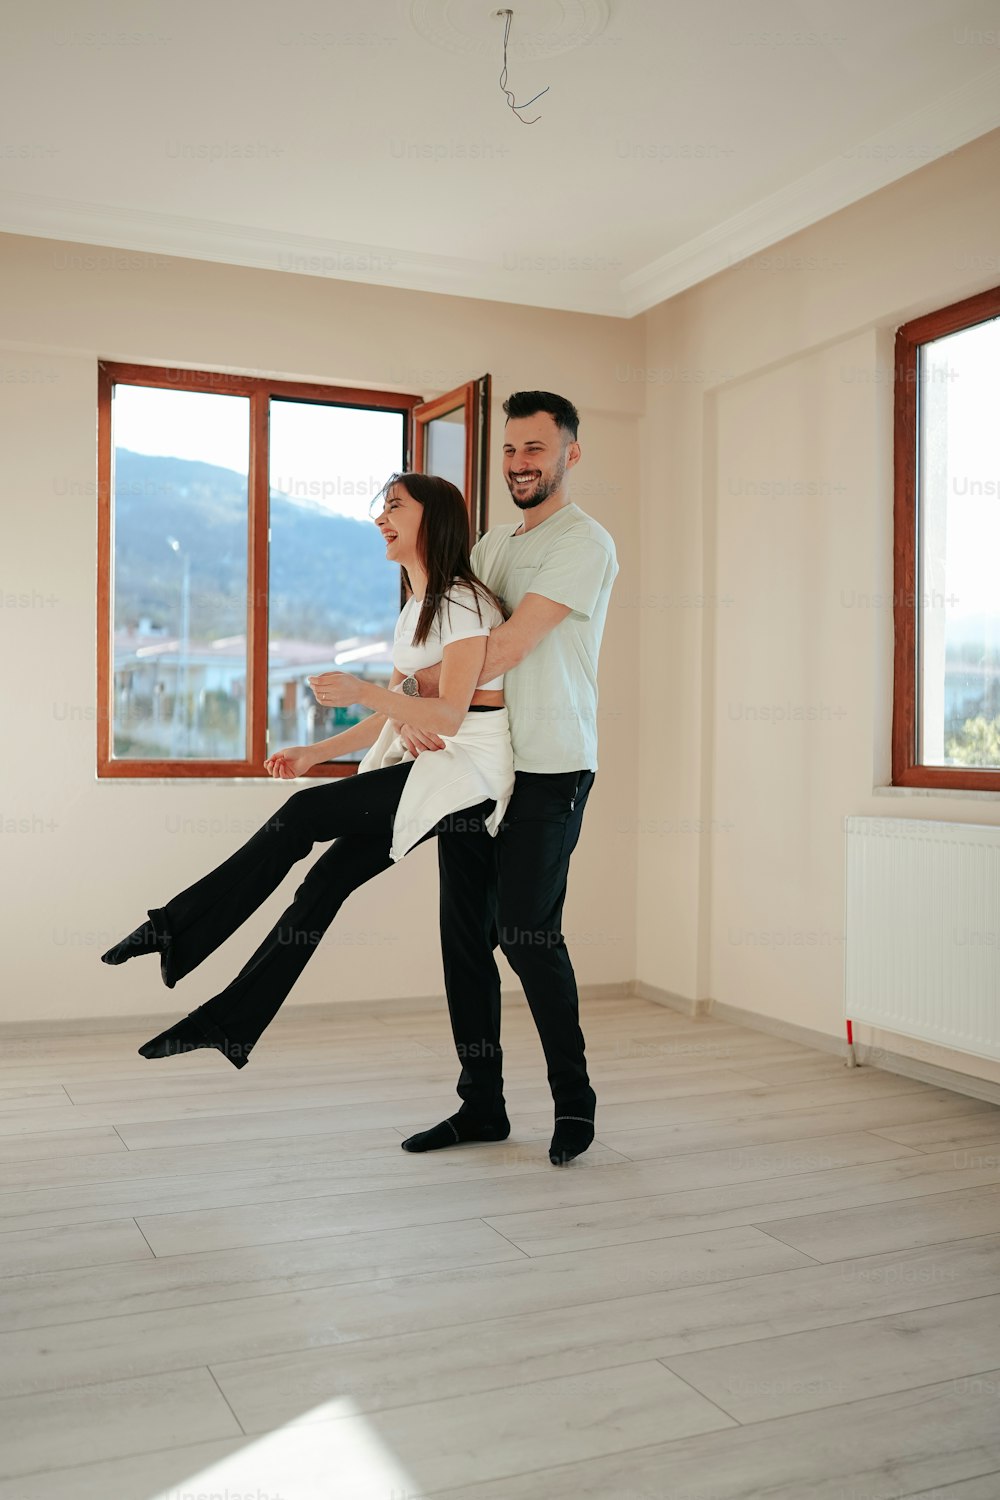 Un hombre y una mujer están bailando en una habitación